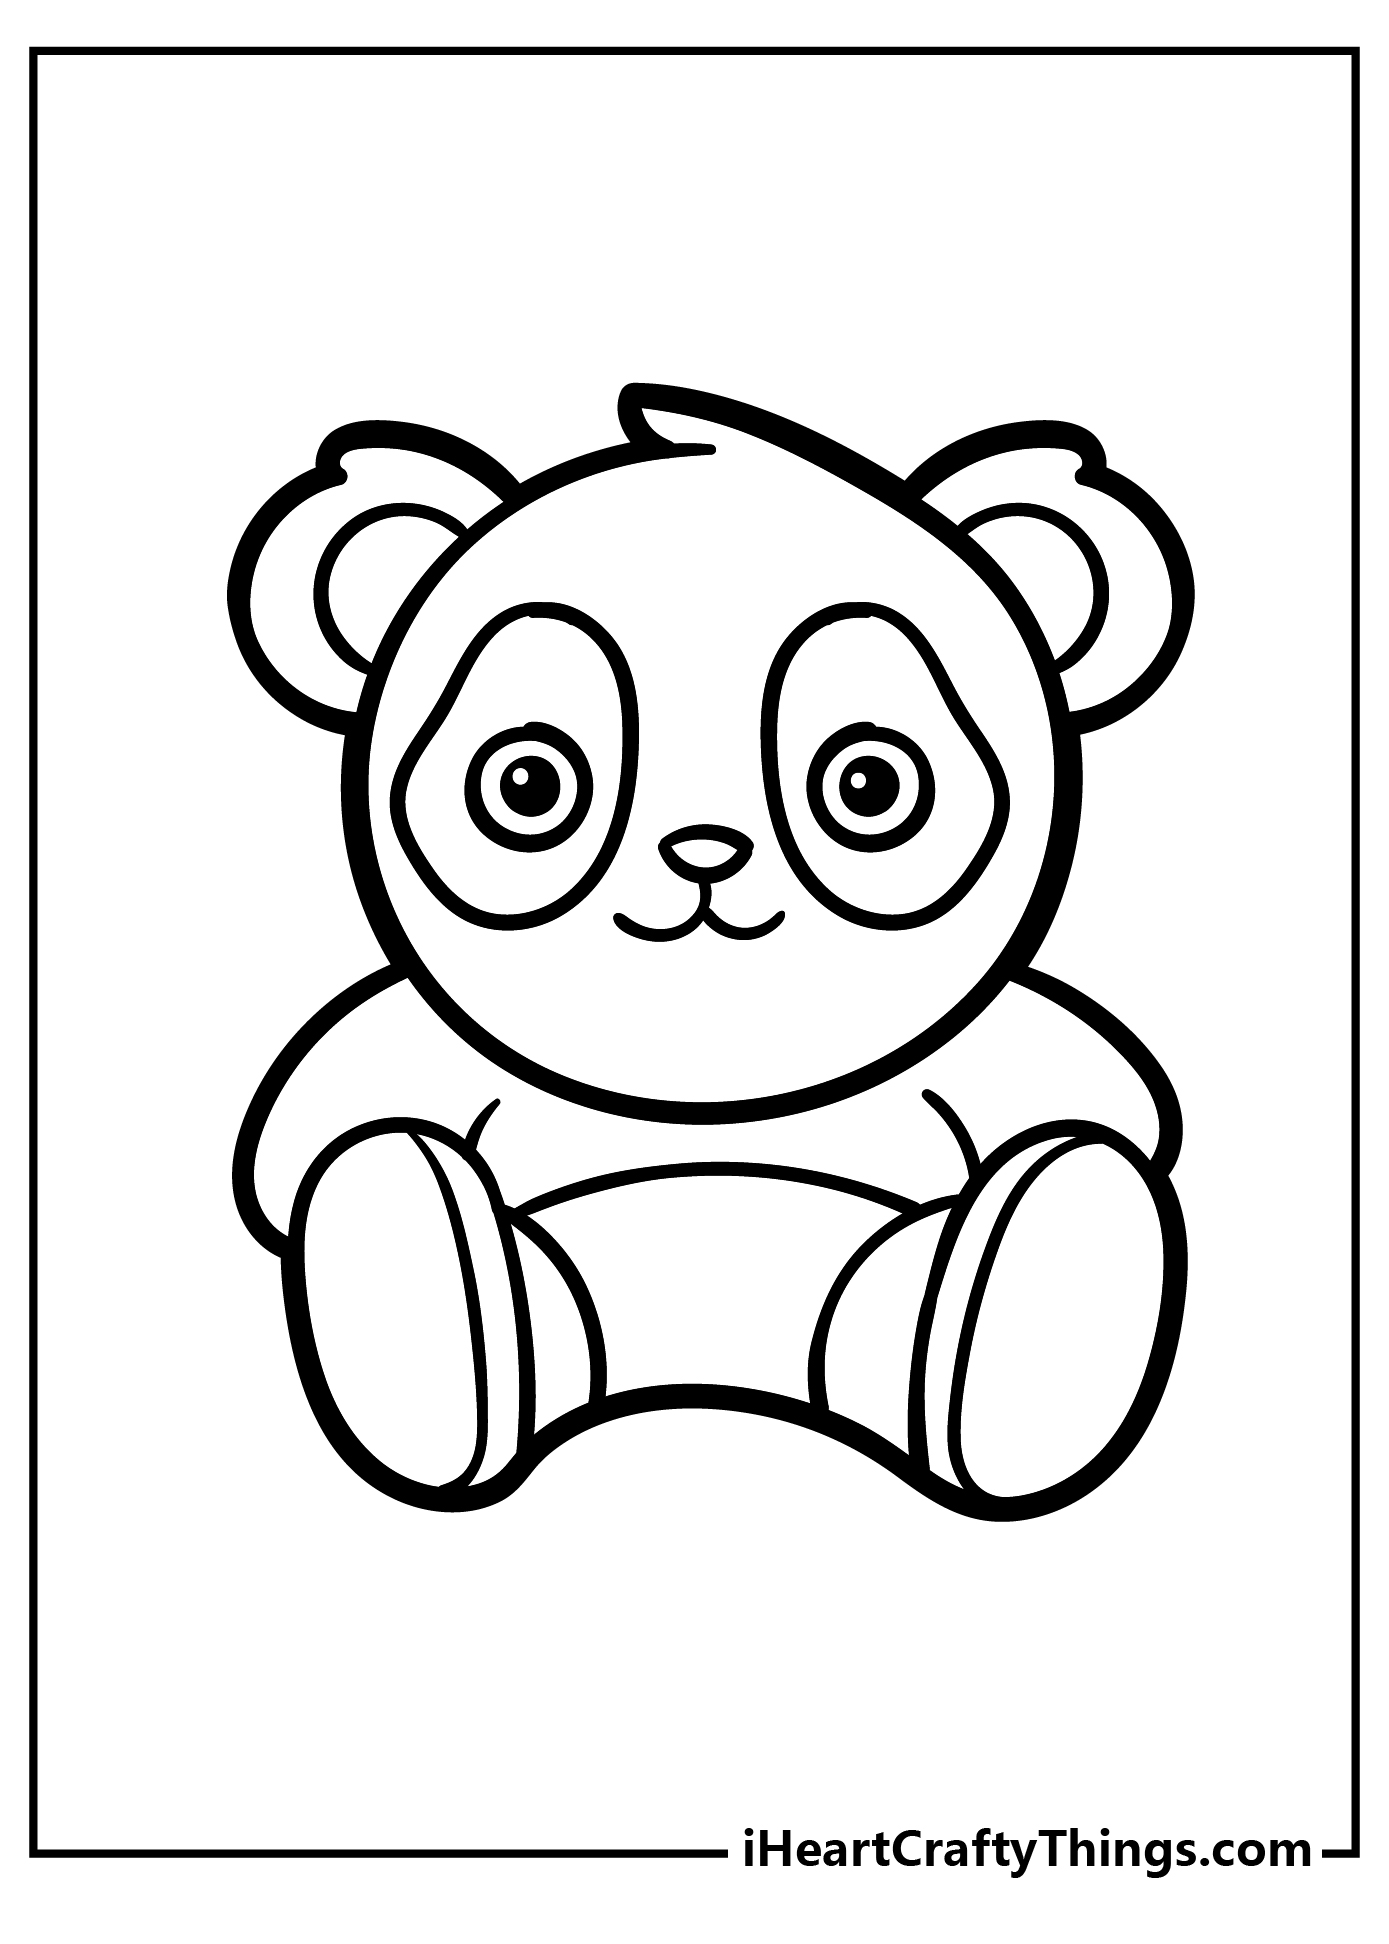 Panda Coloring Book for kids free printable